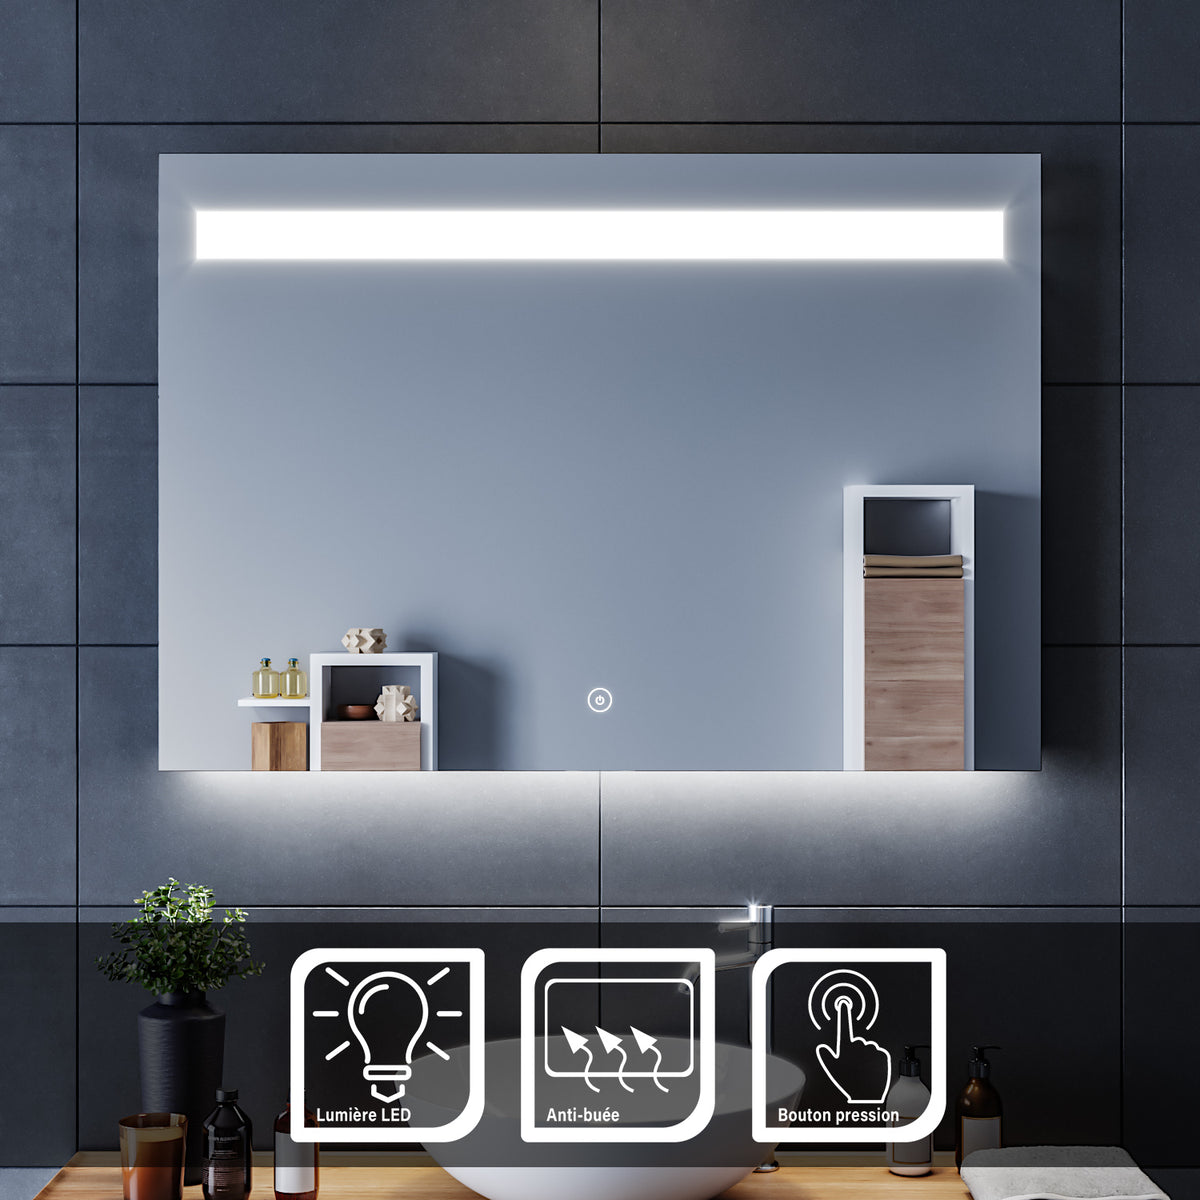 SIRHONA 100x70cm Miroir LED Miroir Salle de Bains avec éclairage LED Miroir Cosmétiques Mural Lumière Illumination avec Commande par Effleurement/Anti-buée - SIRHONA